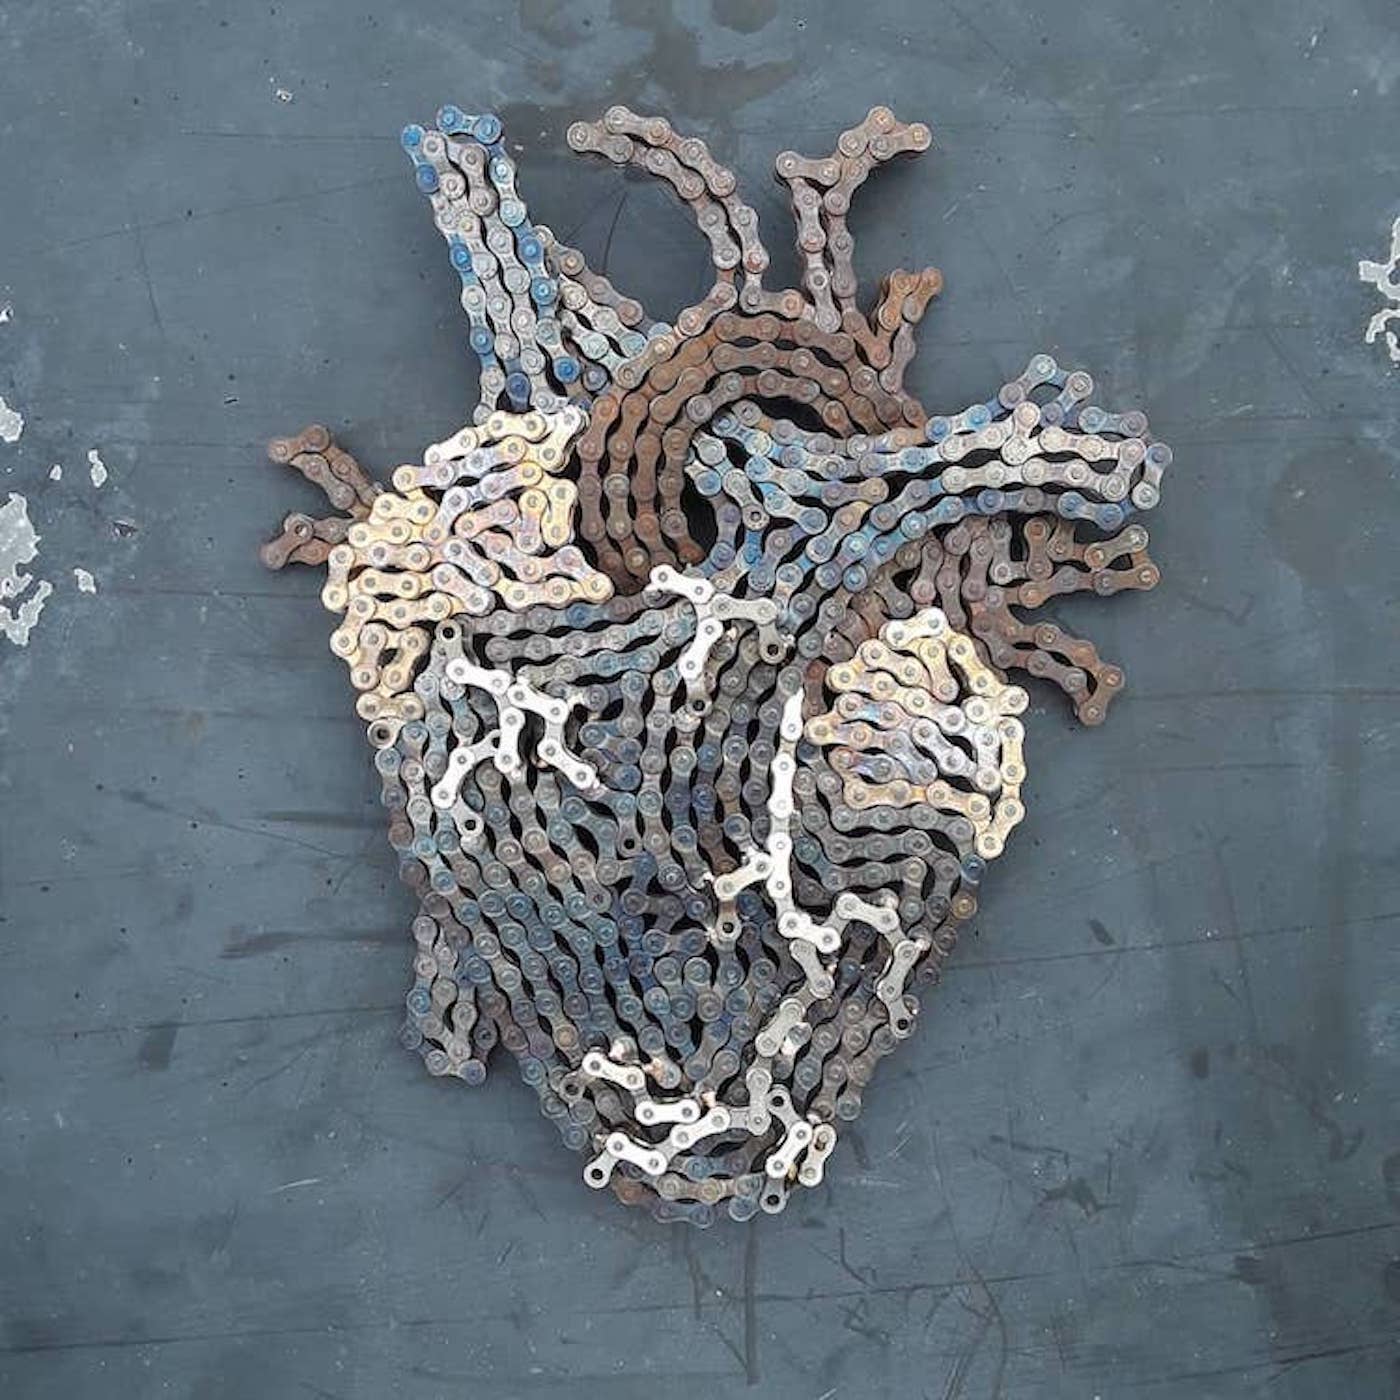 L'artiste Drew Evans recycle les chaînes de vélos en sculptures étonnantes